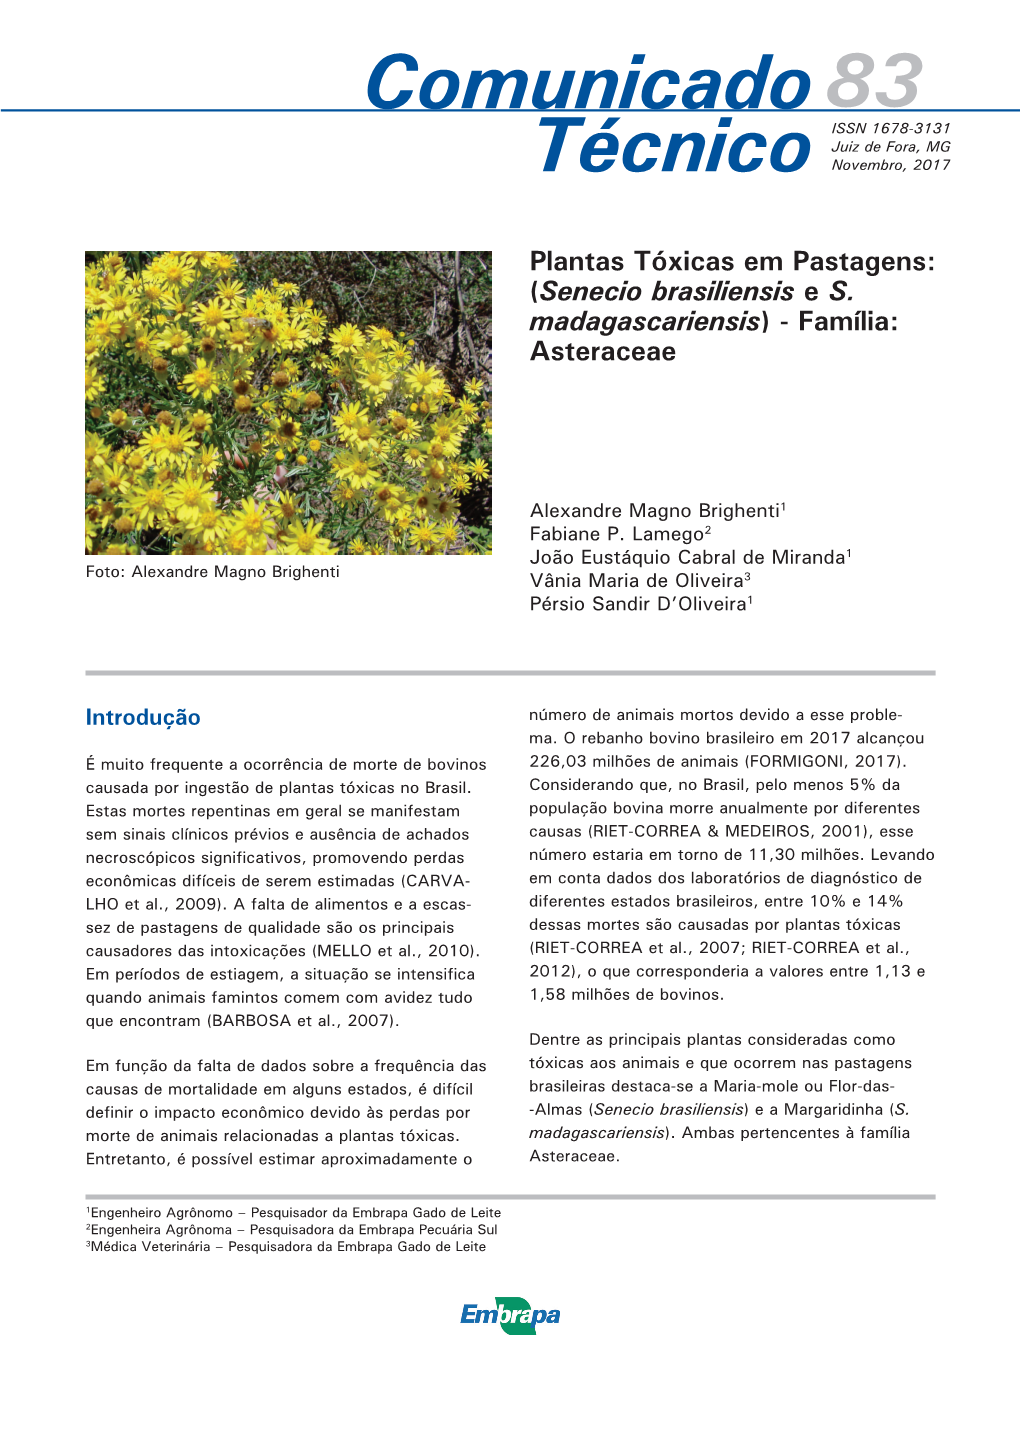 Plantas Tóxicas Em Pastagens: (Senecio Brasiliensis E S